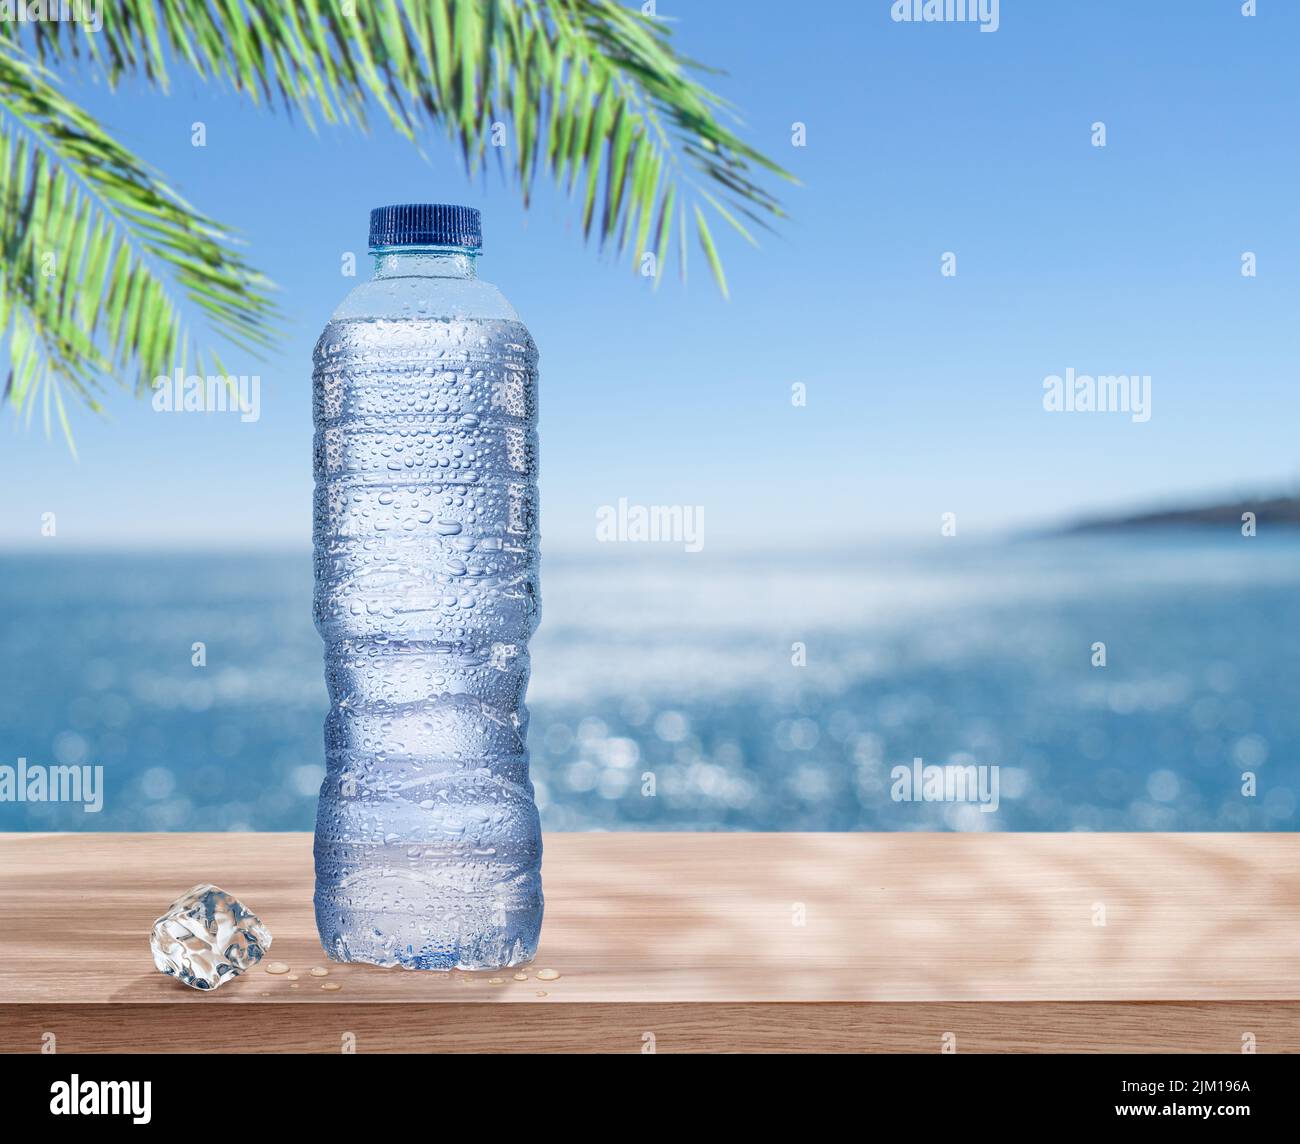 Botella de plástico de agua fría con gotas de condensación bajo la hoja de palma. El mar resplandeciente al fondo. Foto de stock